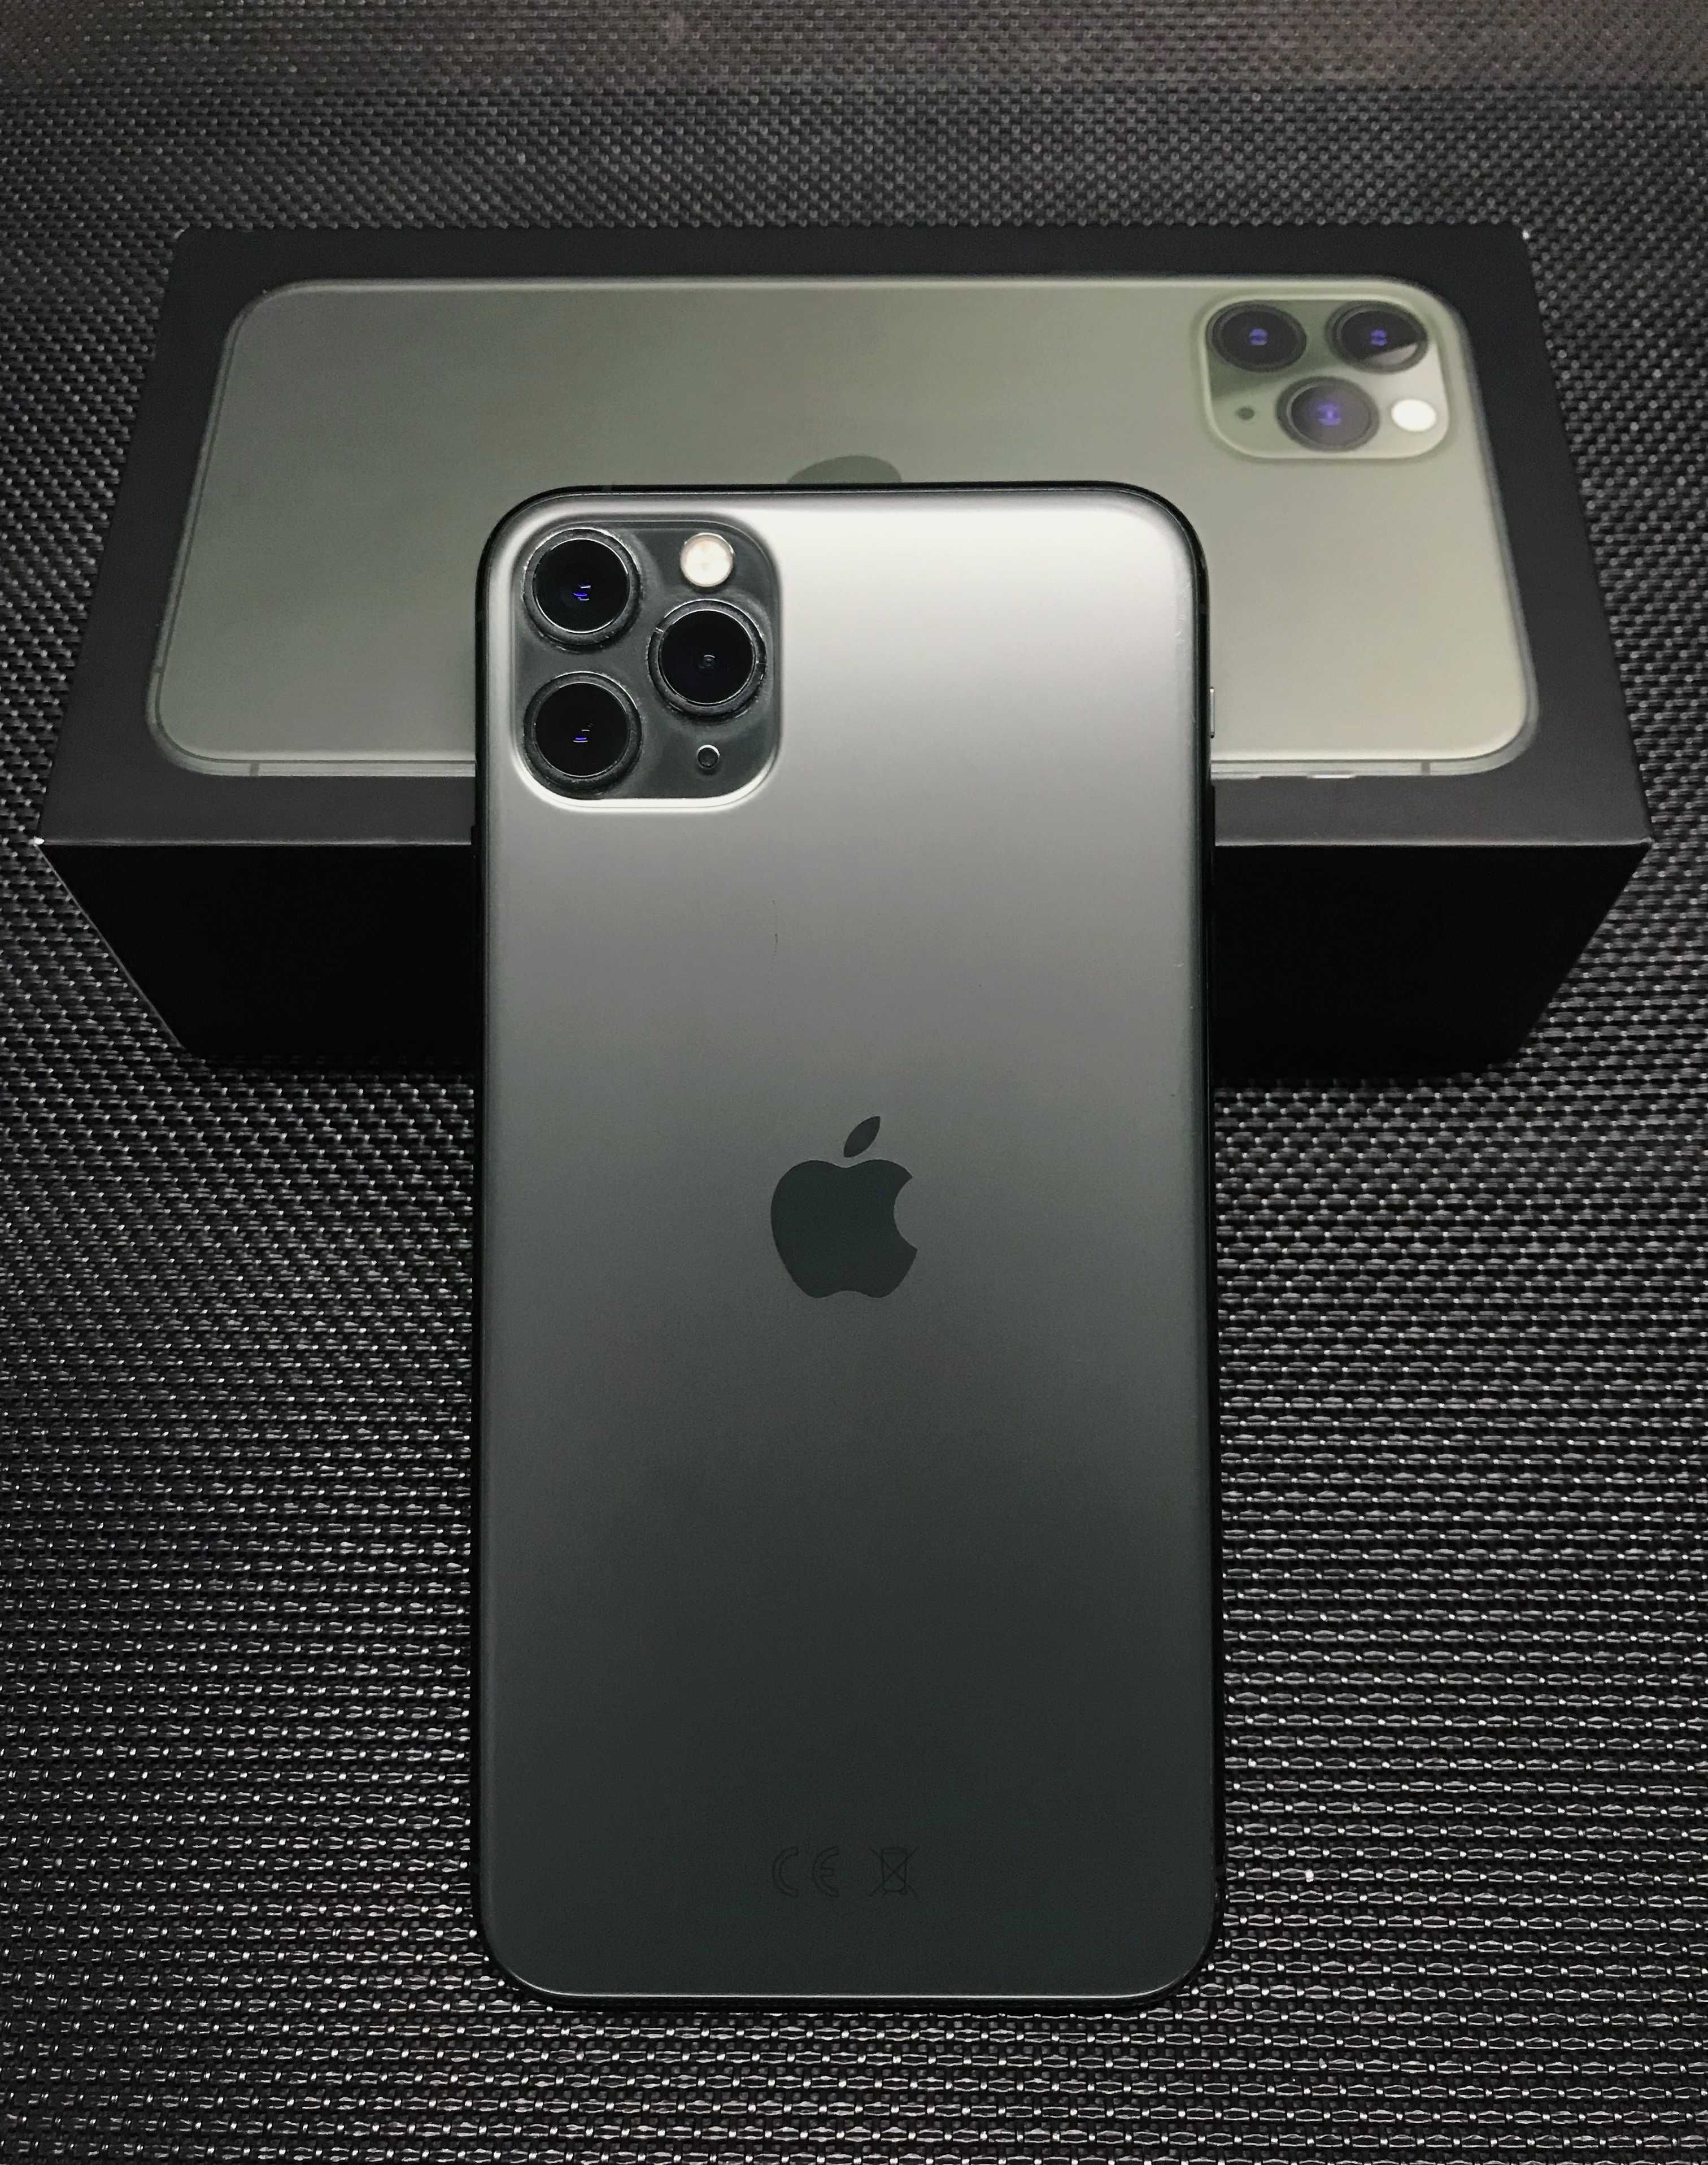 iPhone 11 Pro Max 64GB - Desbloqueado - Na caixa, com garantia